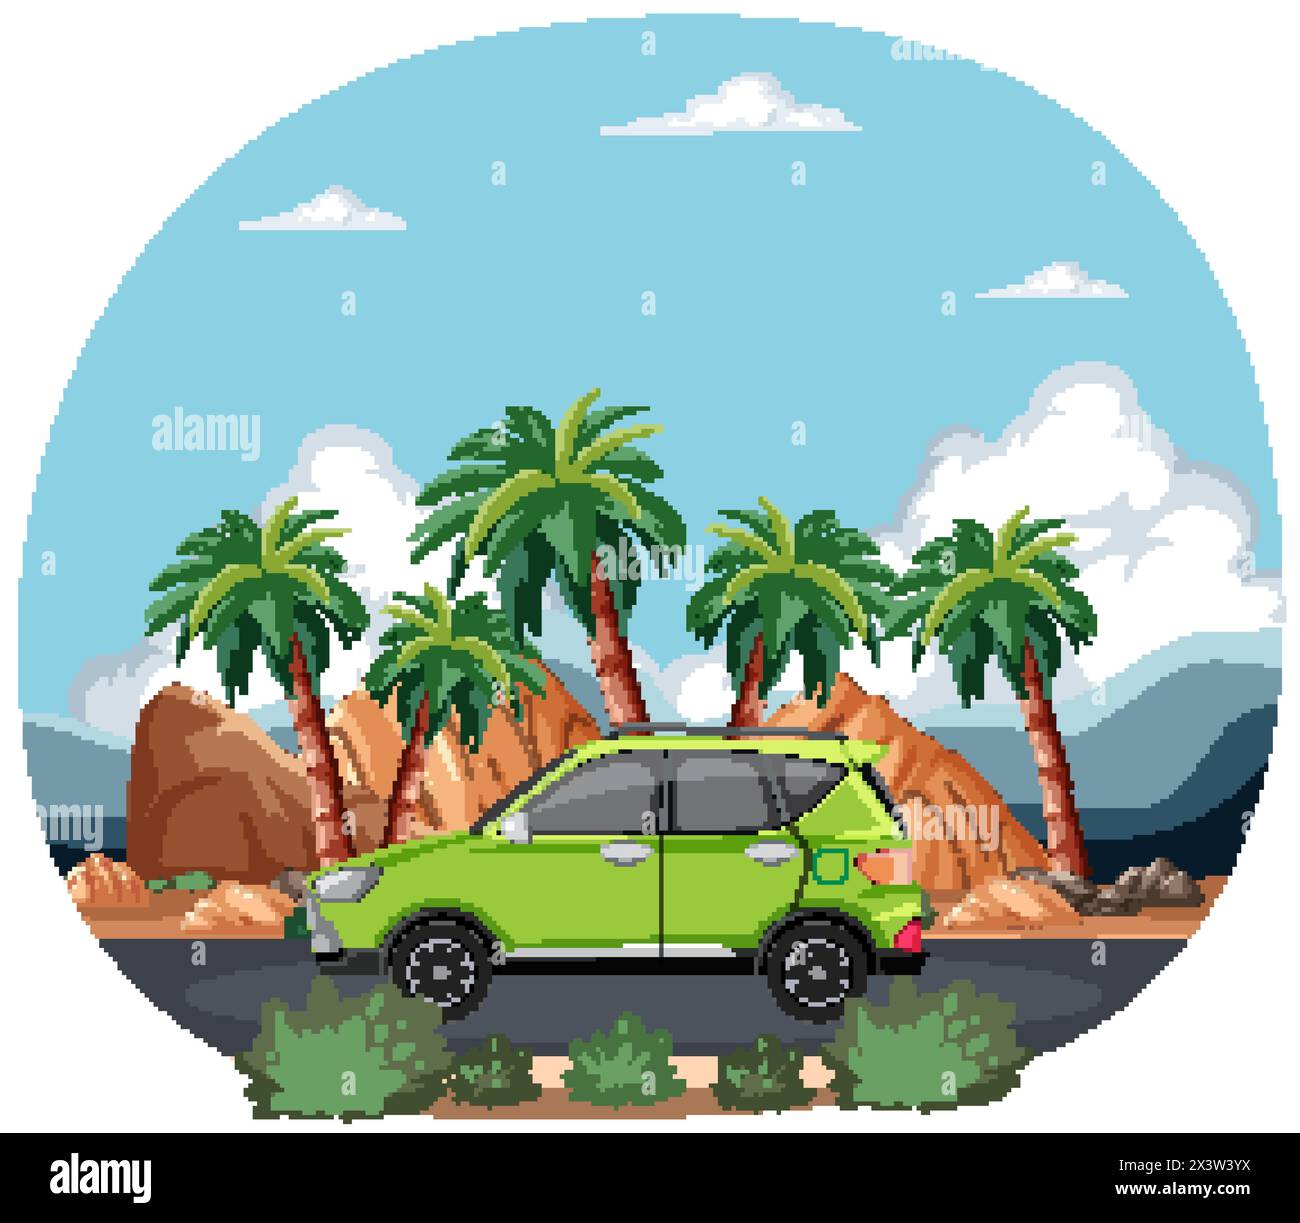 Vektor-Illustration eines Autos zwischen Palmen. Stock Vektor